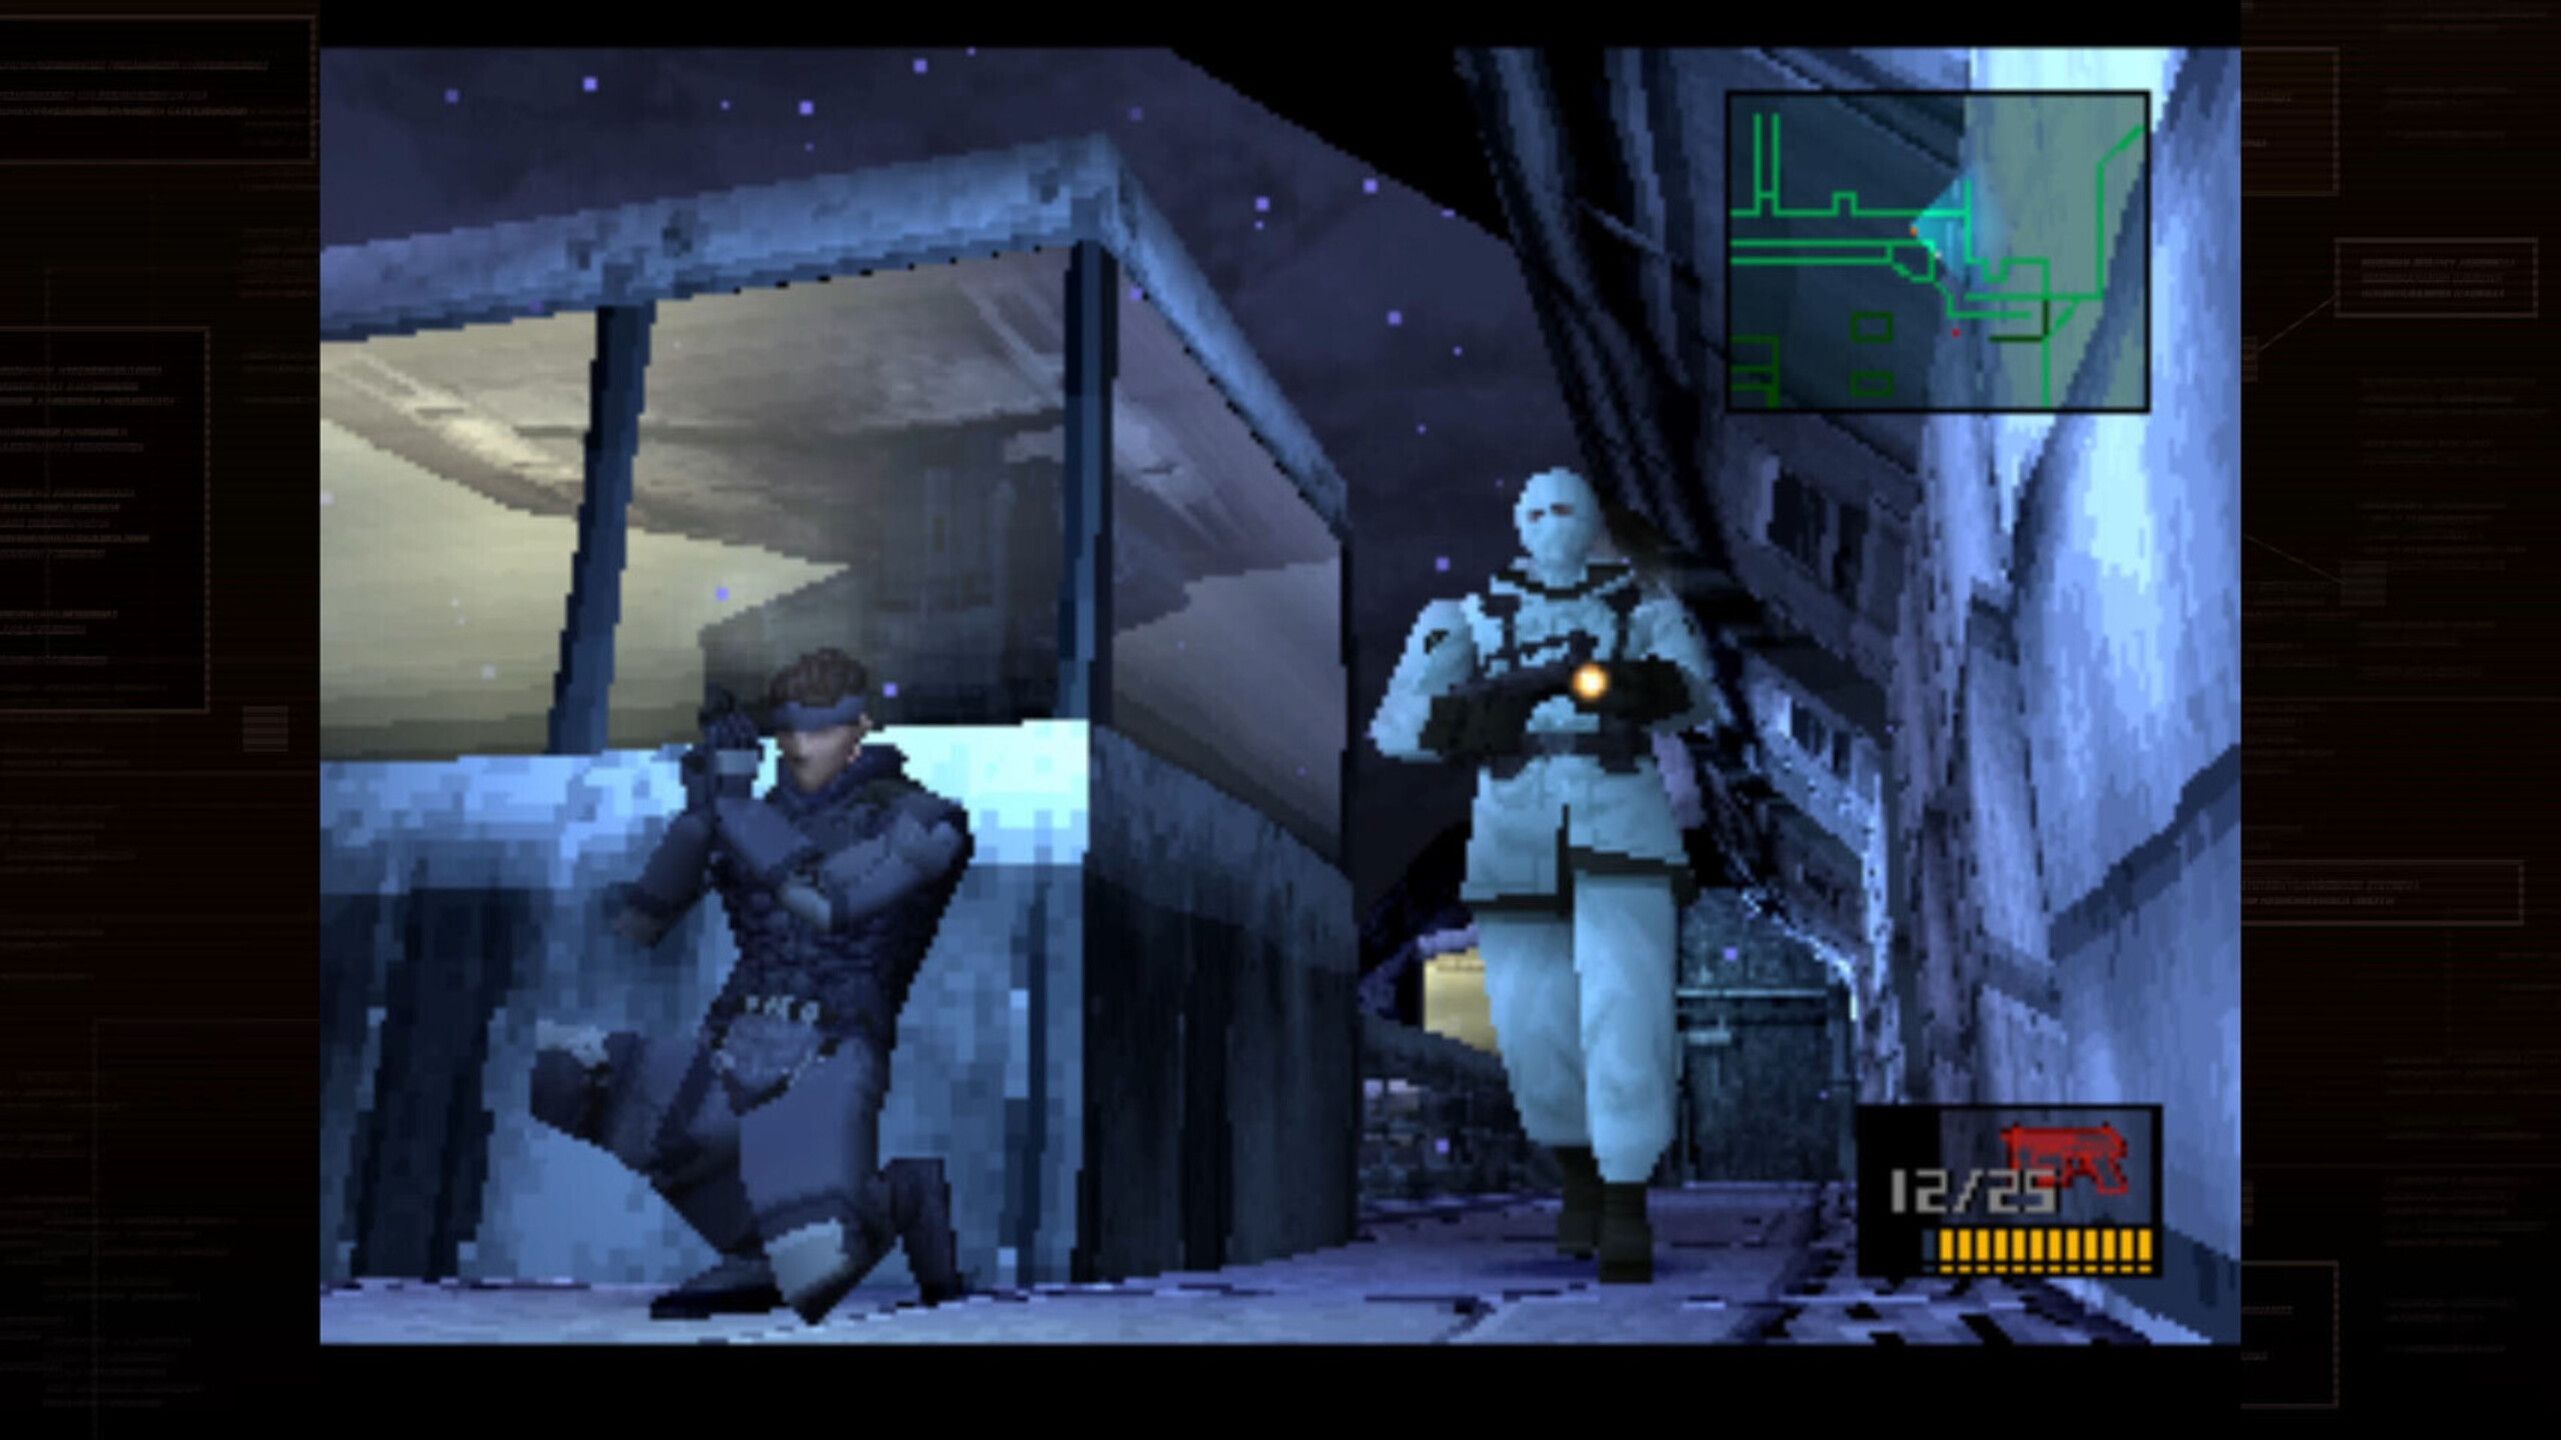 دیوار کے پیچھے چھپے ہوئے ایک کردار کی دھاتی گیئر سالڈ سے اسکرین گریب جبکہ دوسرا گشت پر پہنچتا ہے۔ 